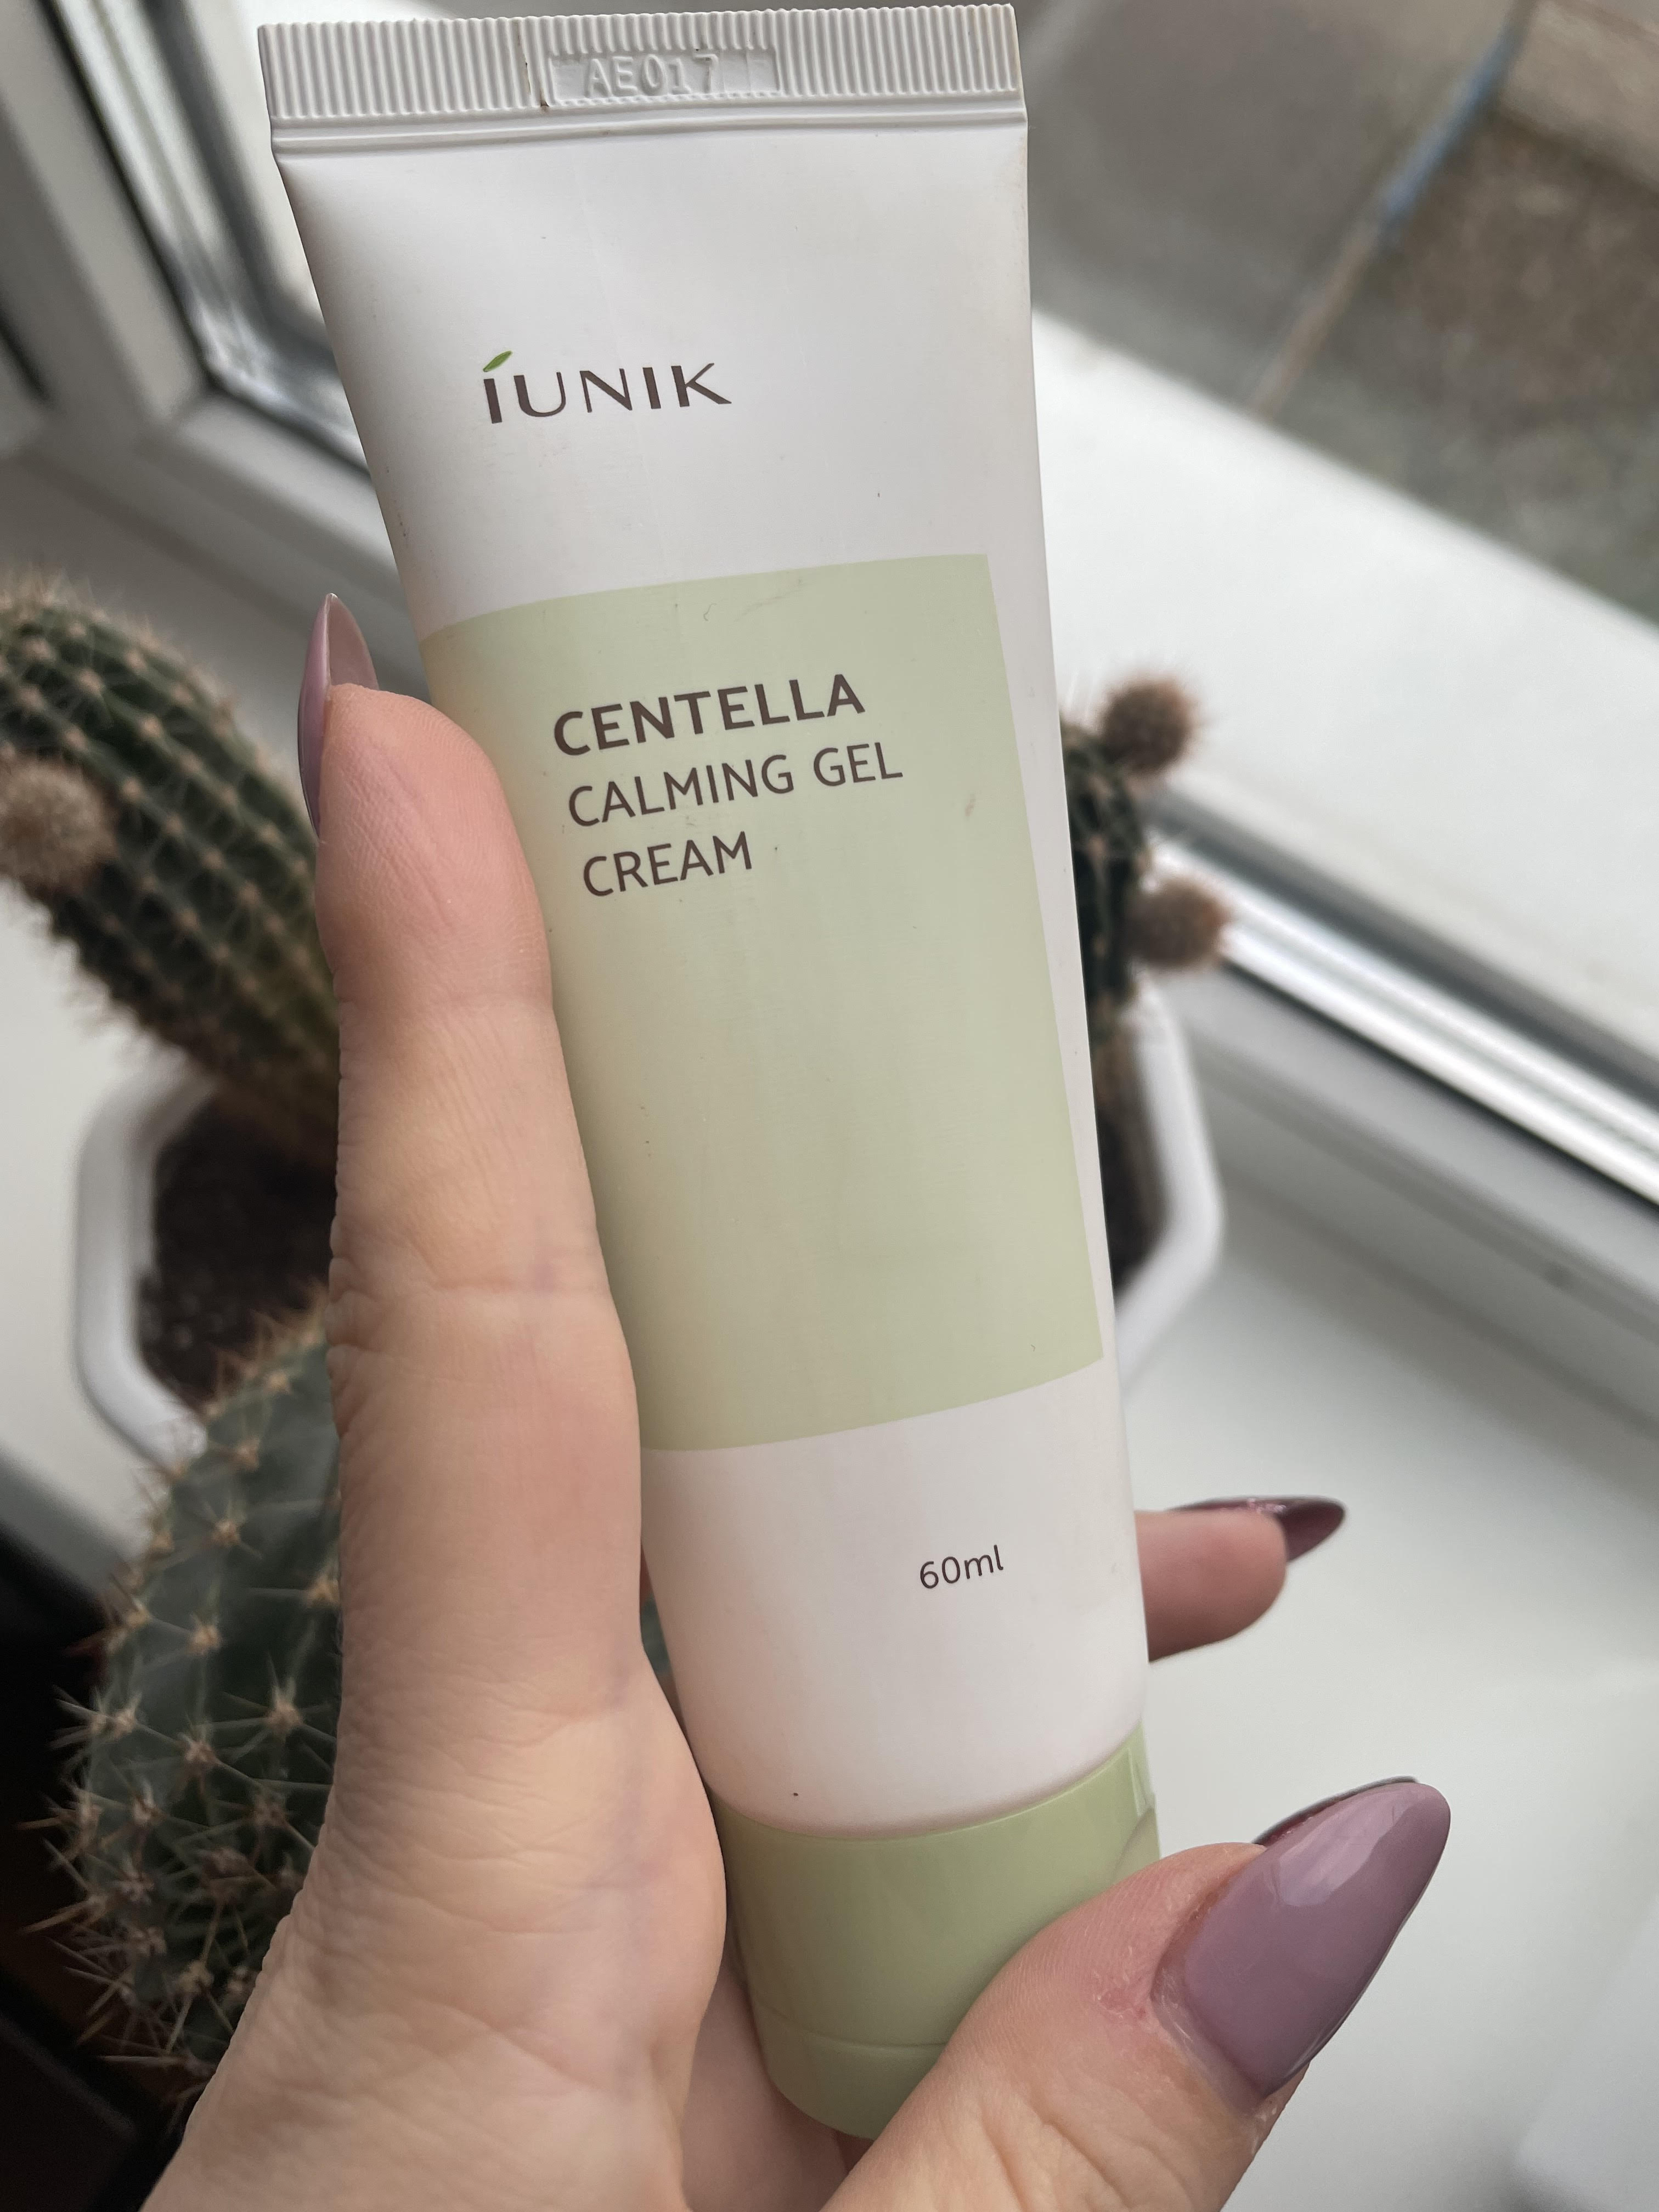 Iunik_Centella calming gel cream